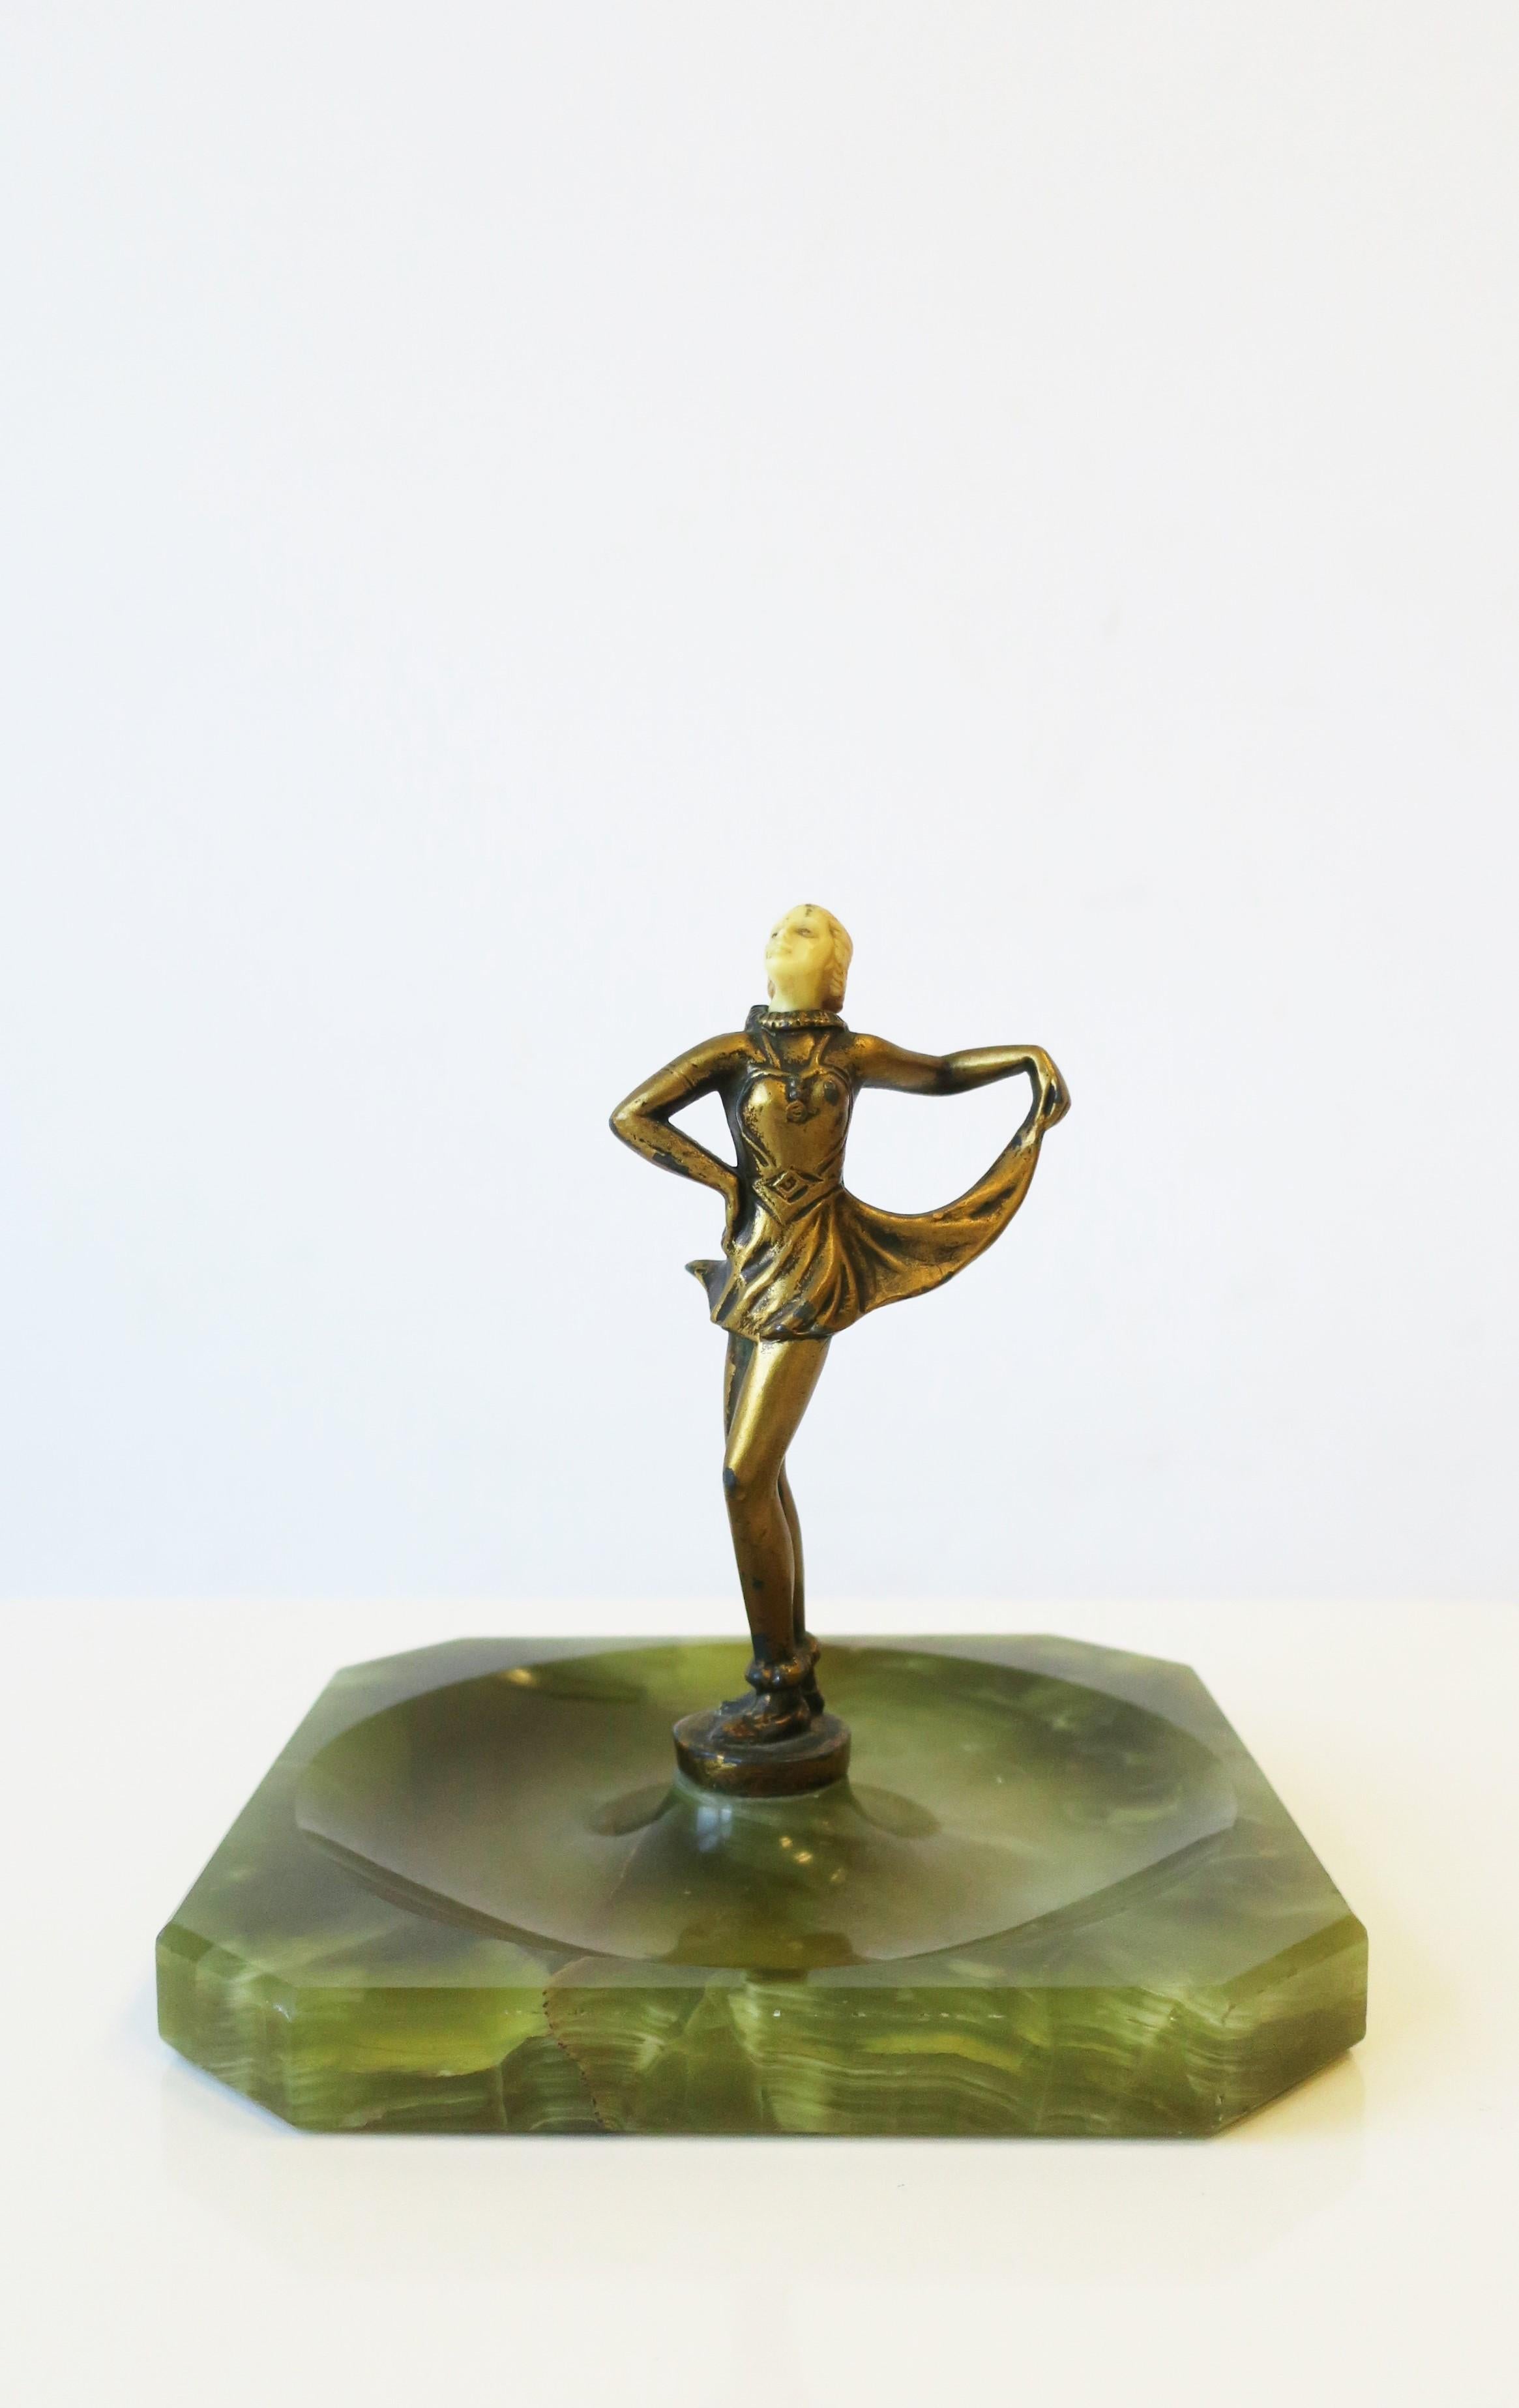 Skulptur einer Tänzerin aus Messing und Sockel aus grünem Onyxmarmor, Art-Déco-Periode, etwa Anfang des 20. Jahrhunderts. Der Kopf der Skulptur ist aus Kunstharz und der Körper mit einer Goldauflage auf Messing, abgeschlossen mit einem Sockel aus